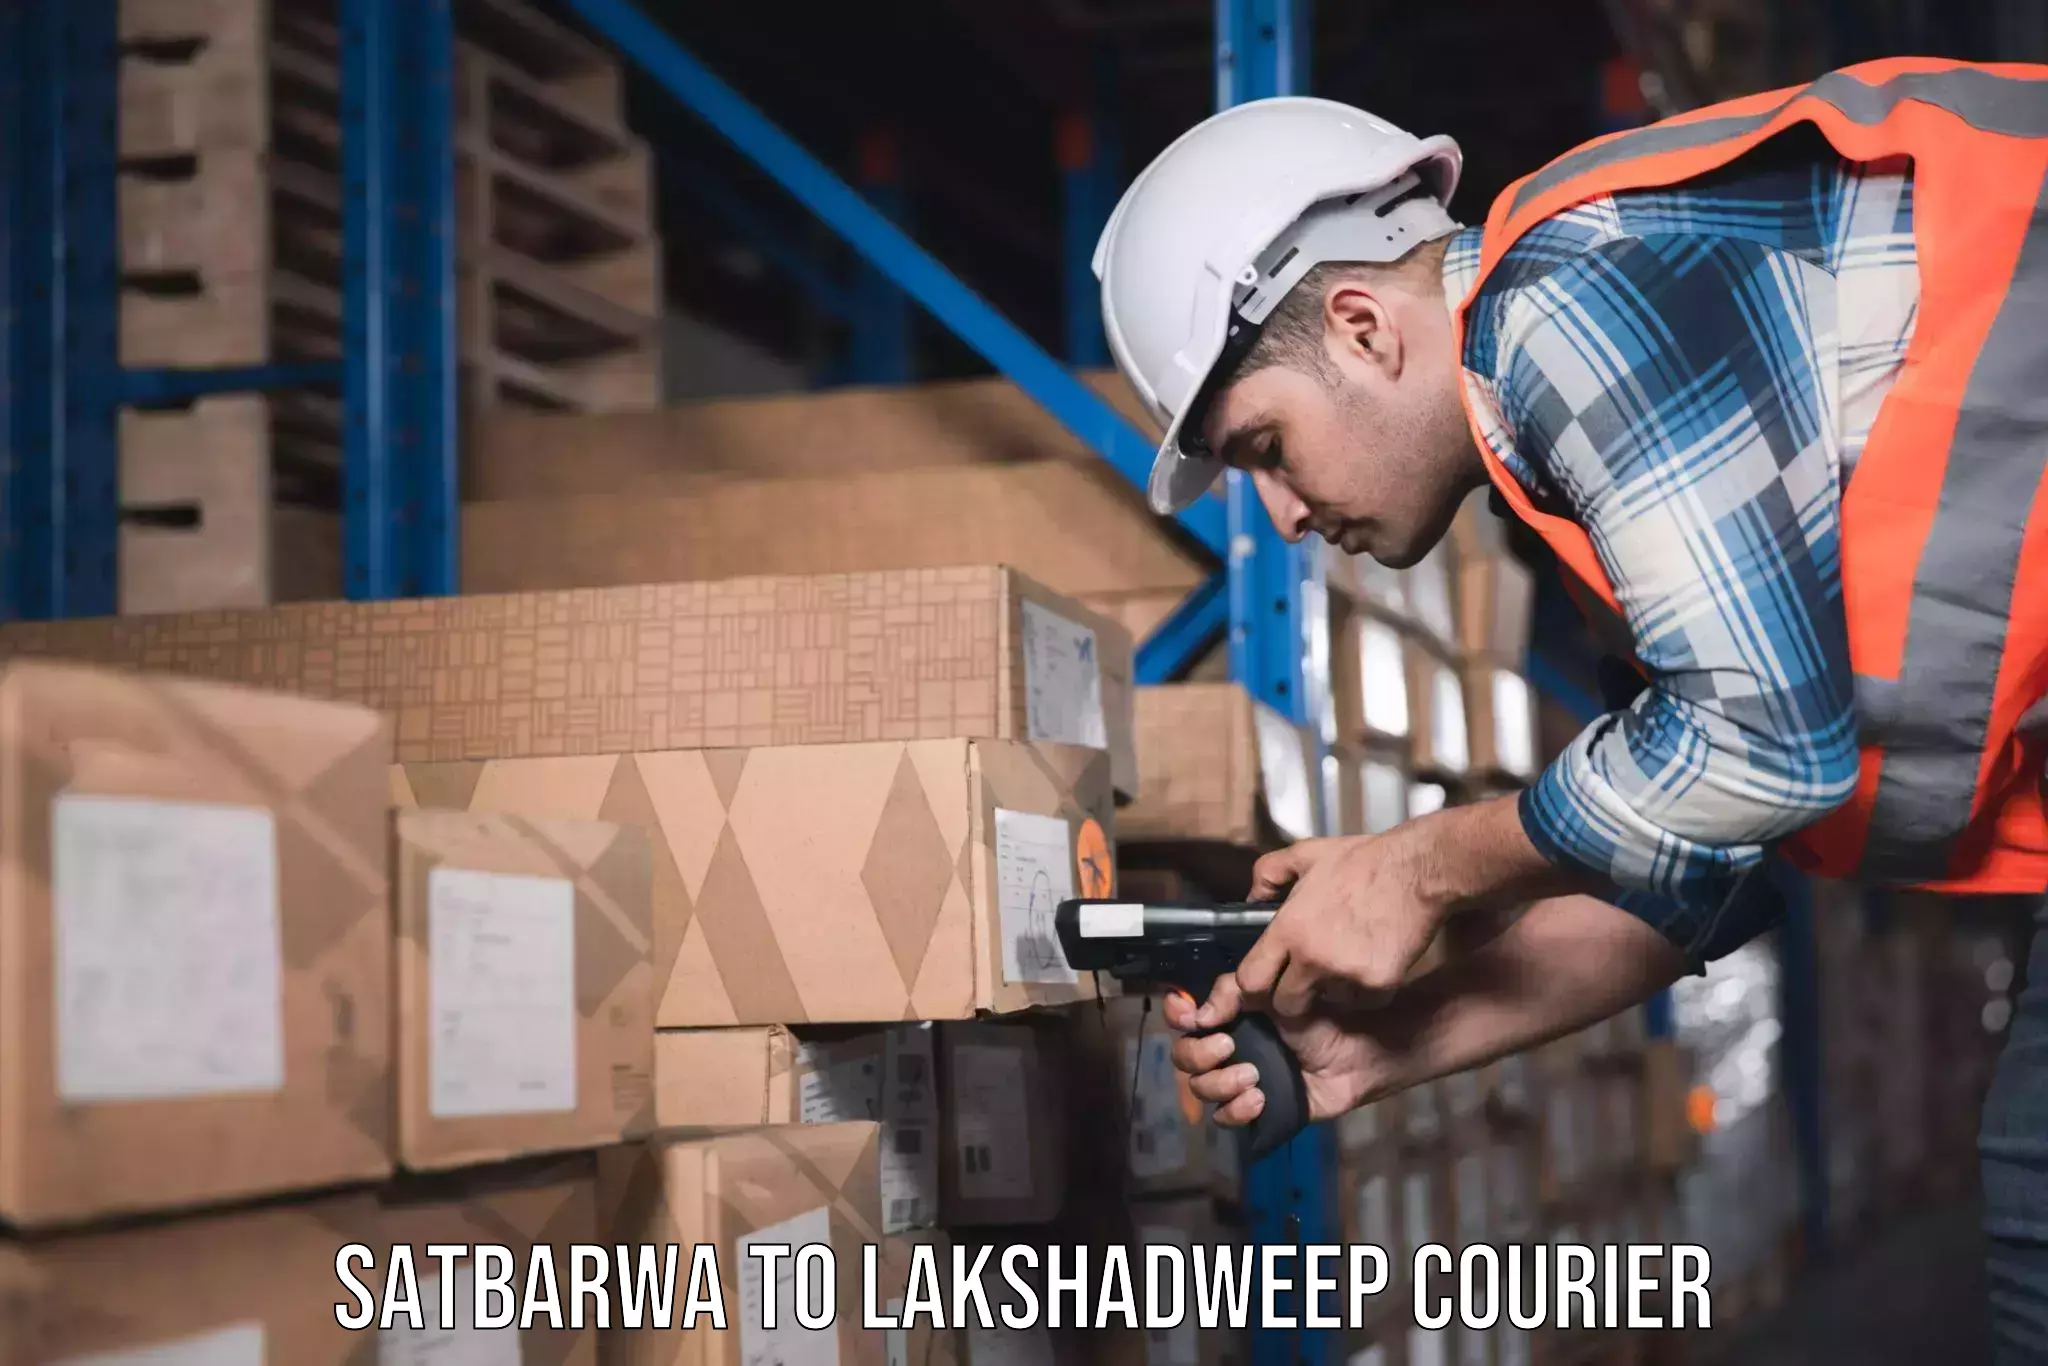 Furniture transport professionals Satbarwa to Lakshadweep